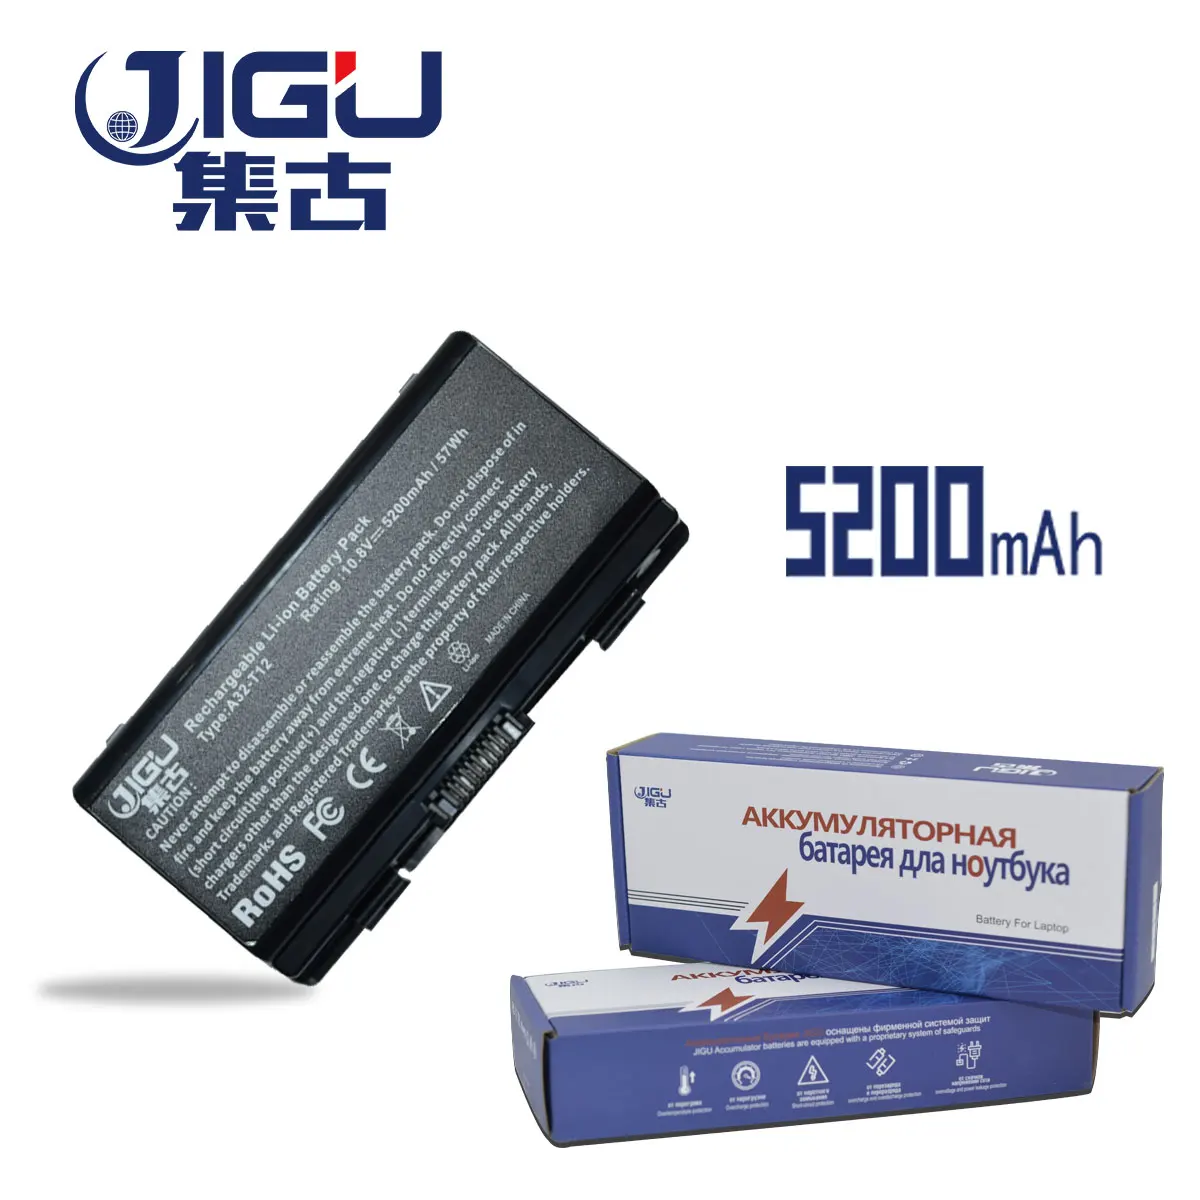 JIGU Laptop Baterija Za Asus X51H X51RL X51L X51R A31-T12 A32-T12 X58 X58C X58L X58LeA32-X51